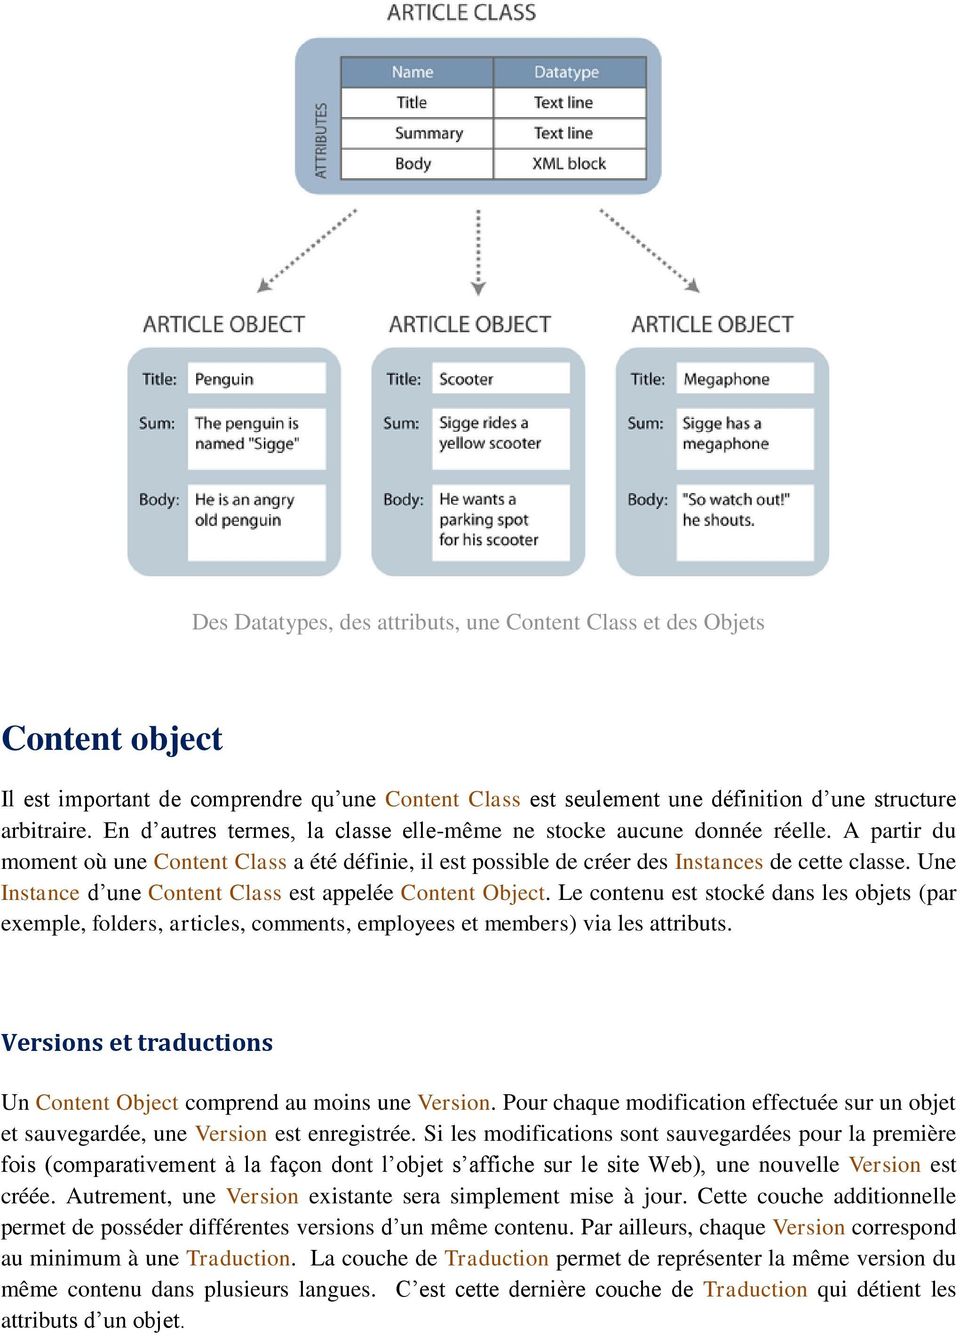 Une Instance d une Content Class est appelée Content Object. Le contenu est stocké dans les objets (par exemple, folders, articles, comments, employees et members) via les attributs.